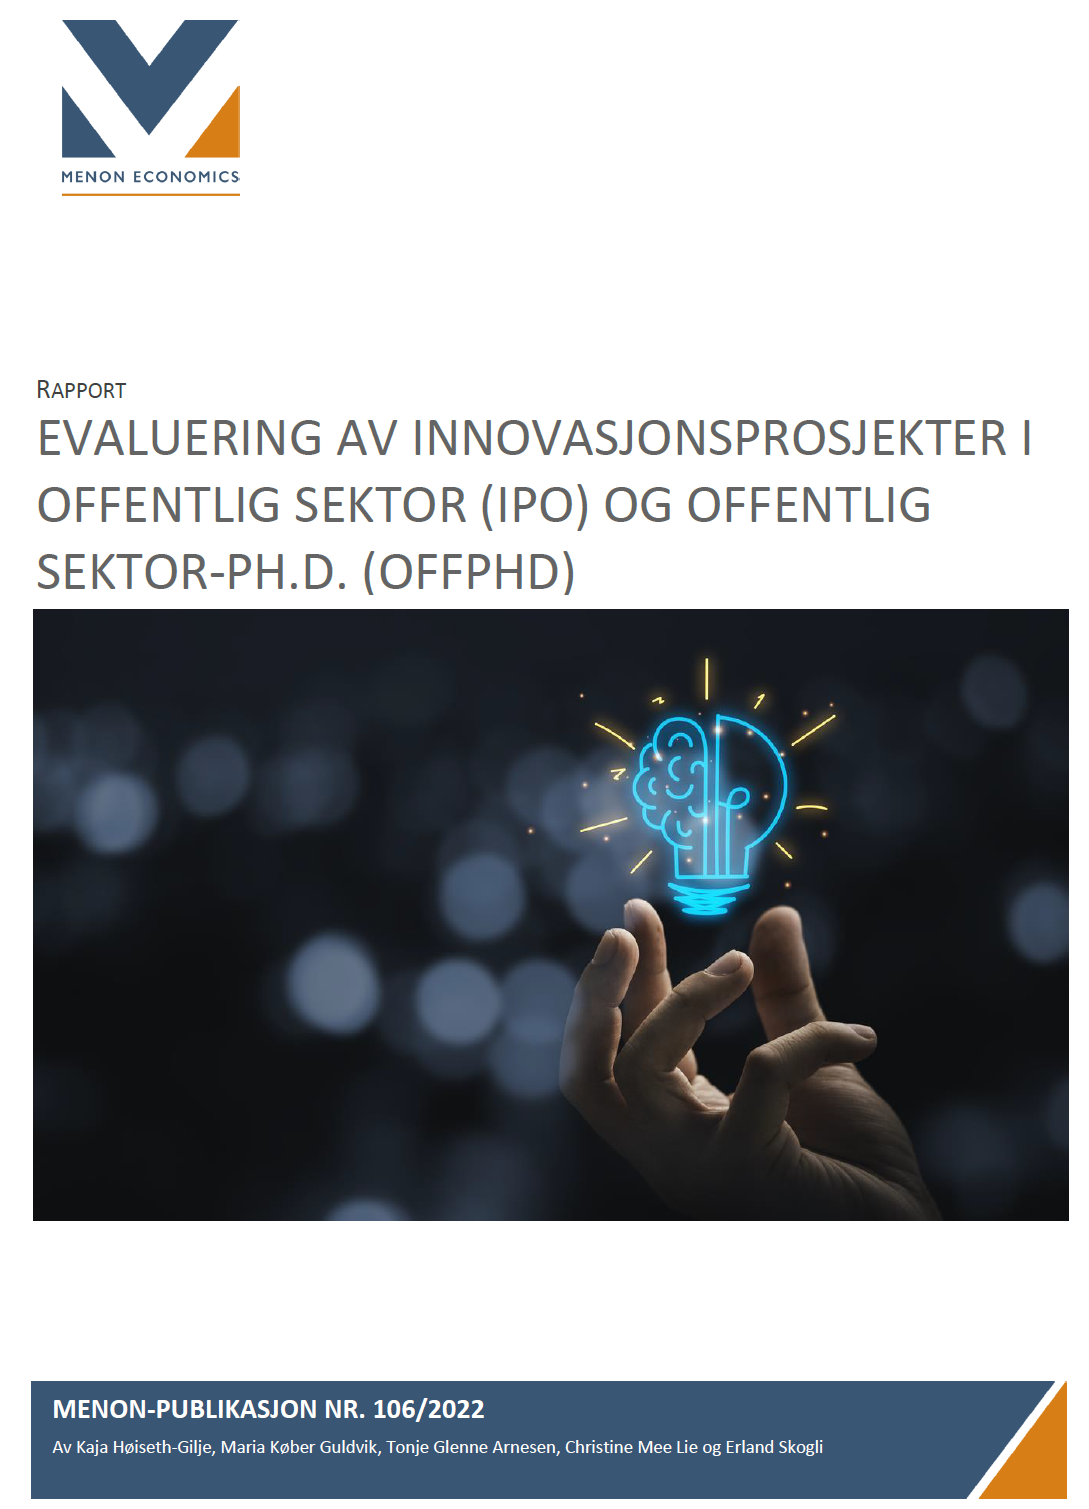 Evaluering av innovasjonsprosjekter i offentlig sektor (IPO) og offentlig sektor -Ph.D. (OFFPHD)